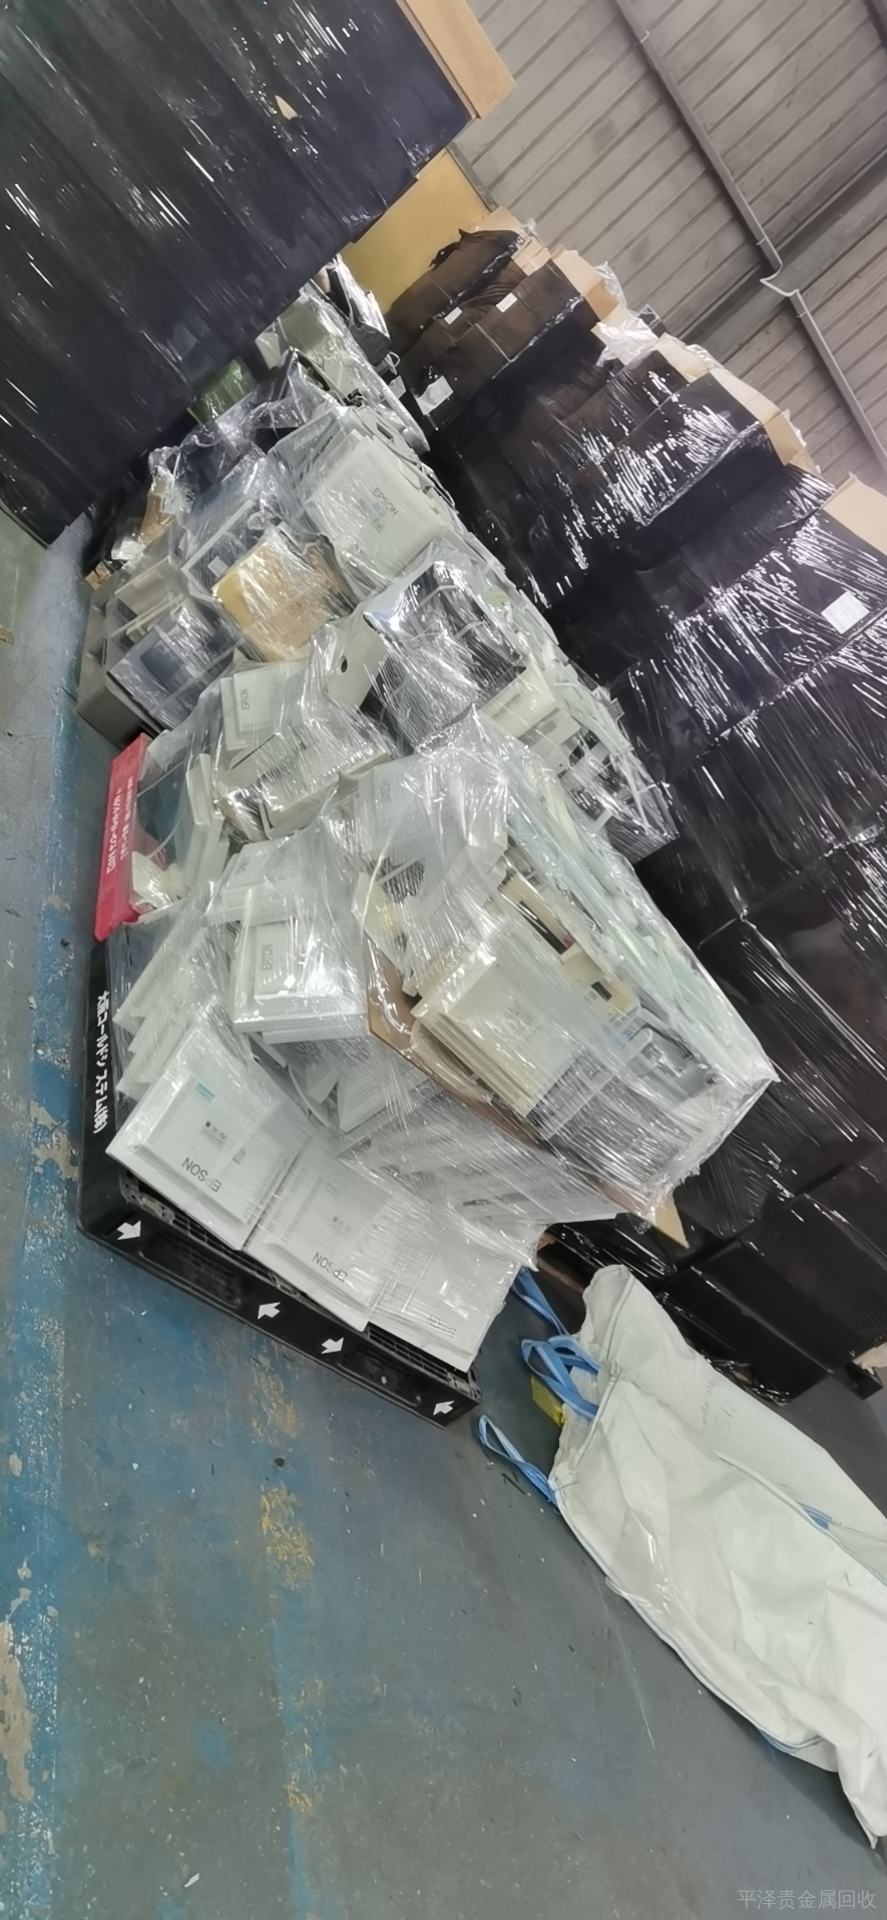 吉林废弃电子元器件回收服务，哪些实体正在第三世界国家倾倒电子废物